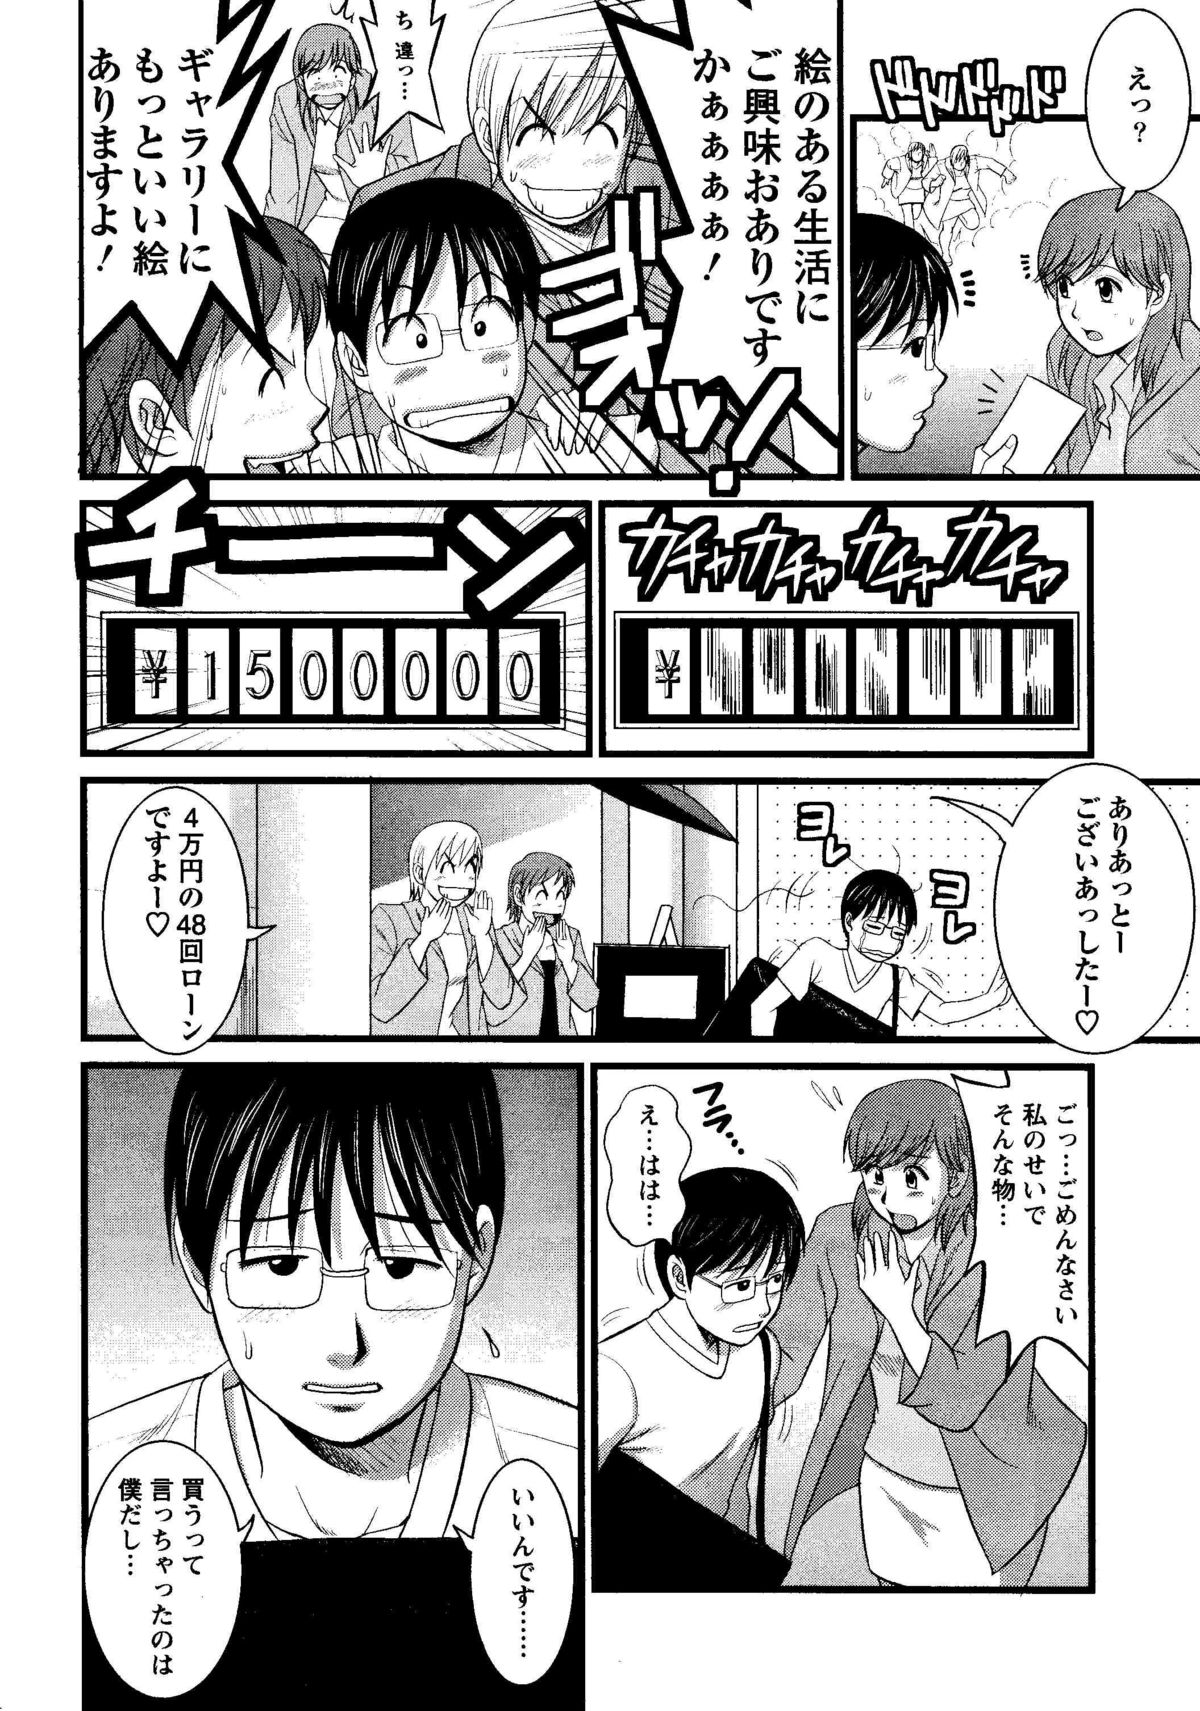 Haken no Muuko-san 8 [Saigado] page 13 full